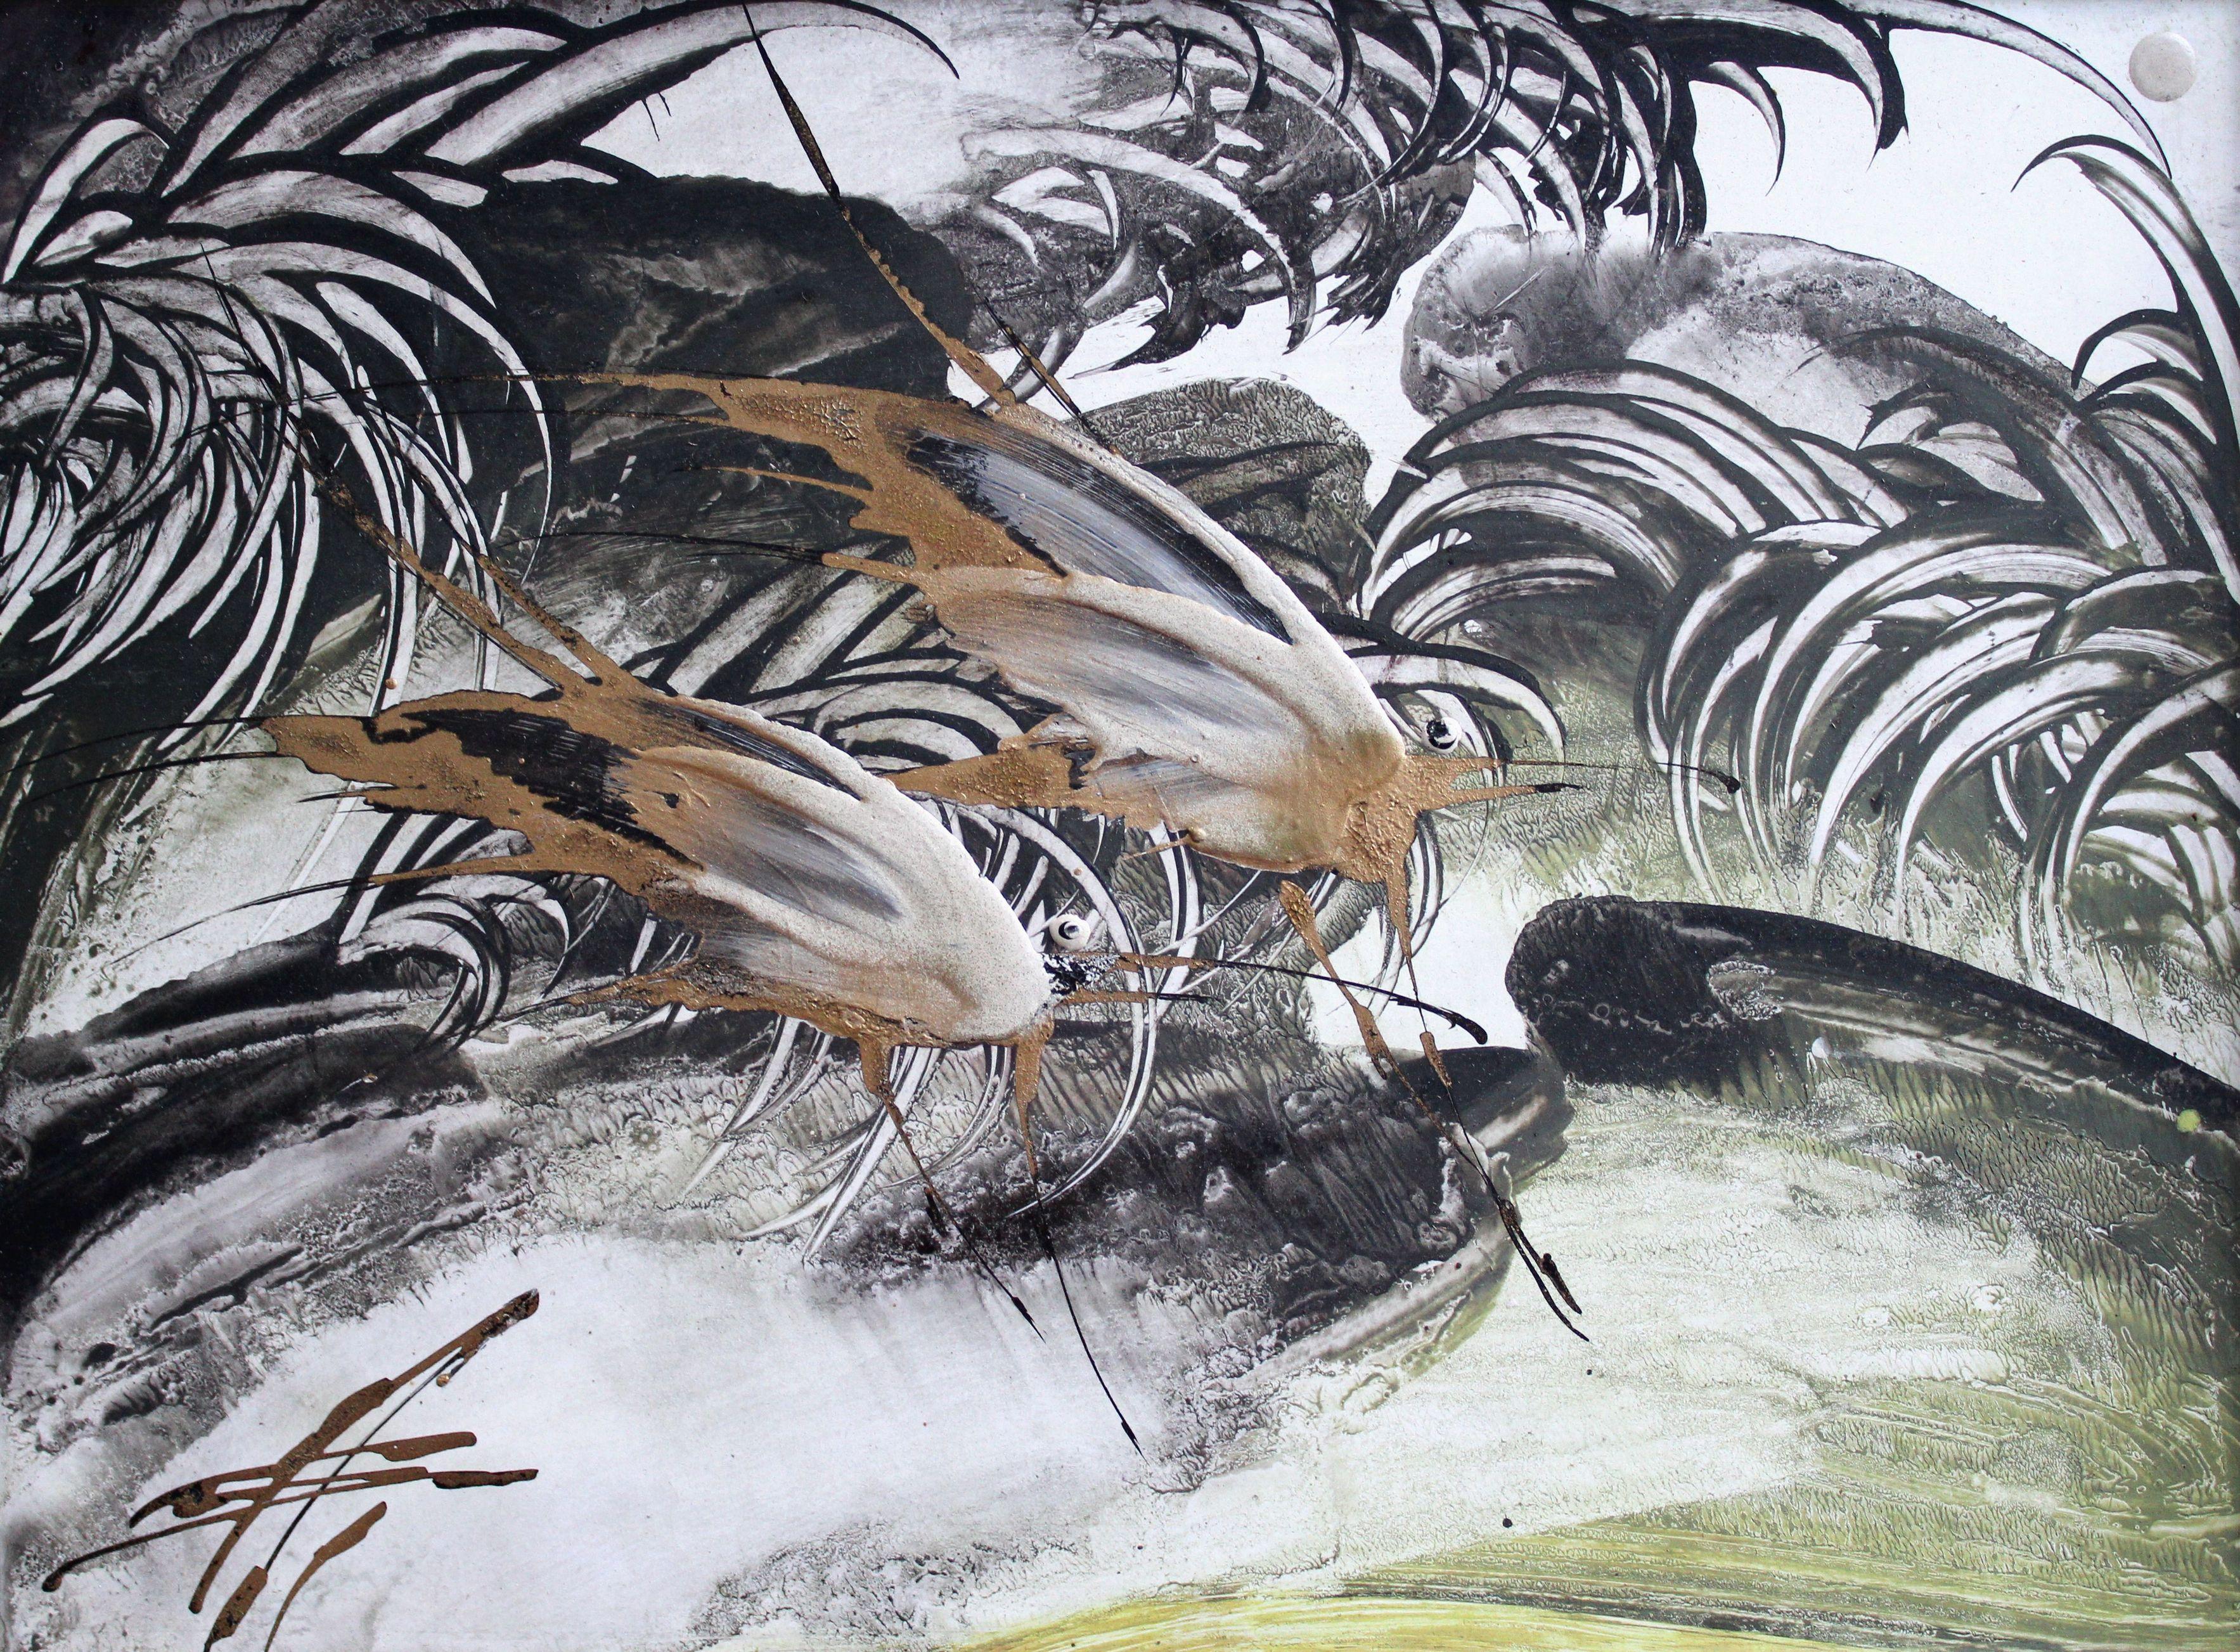 Oiseaux de rêve. Cardboard, technique d'auteur, 22 x 30 cm